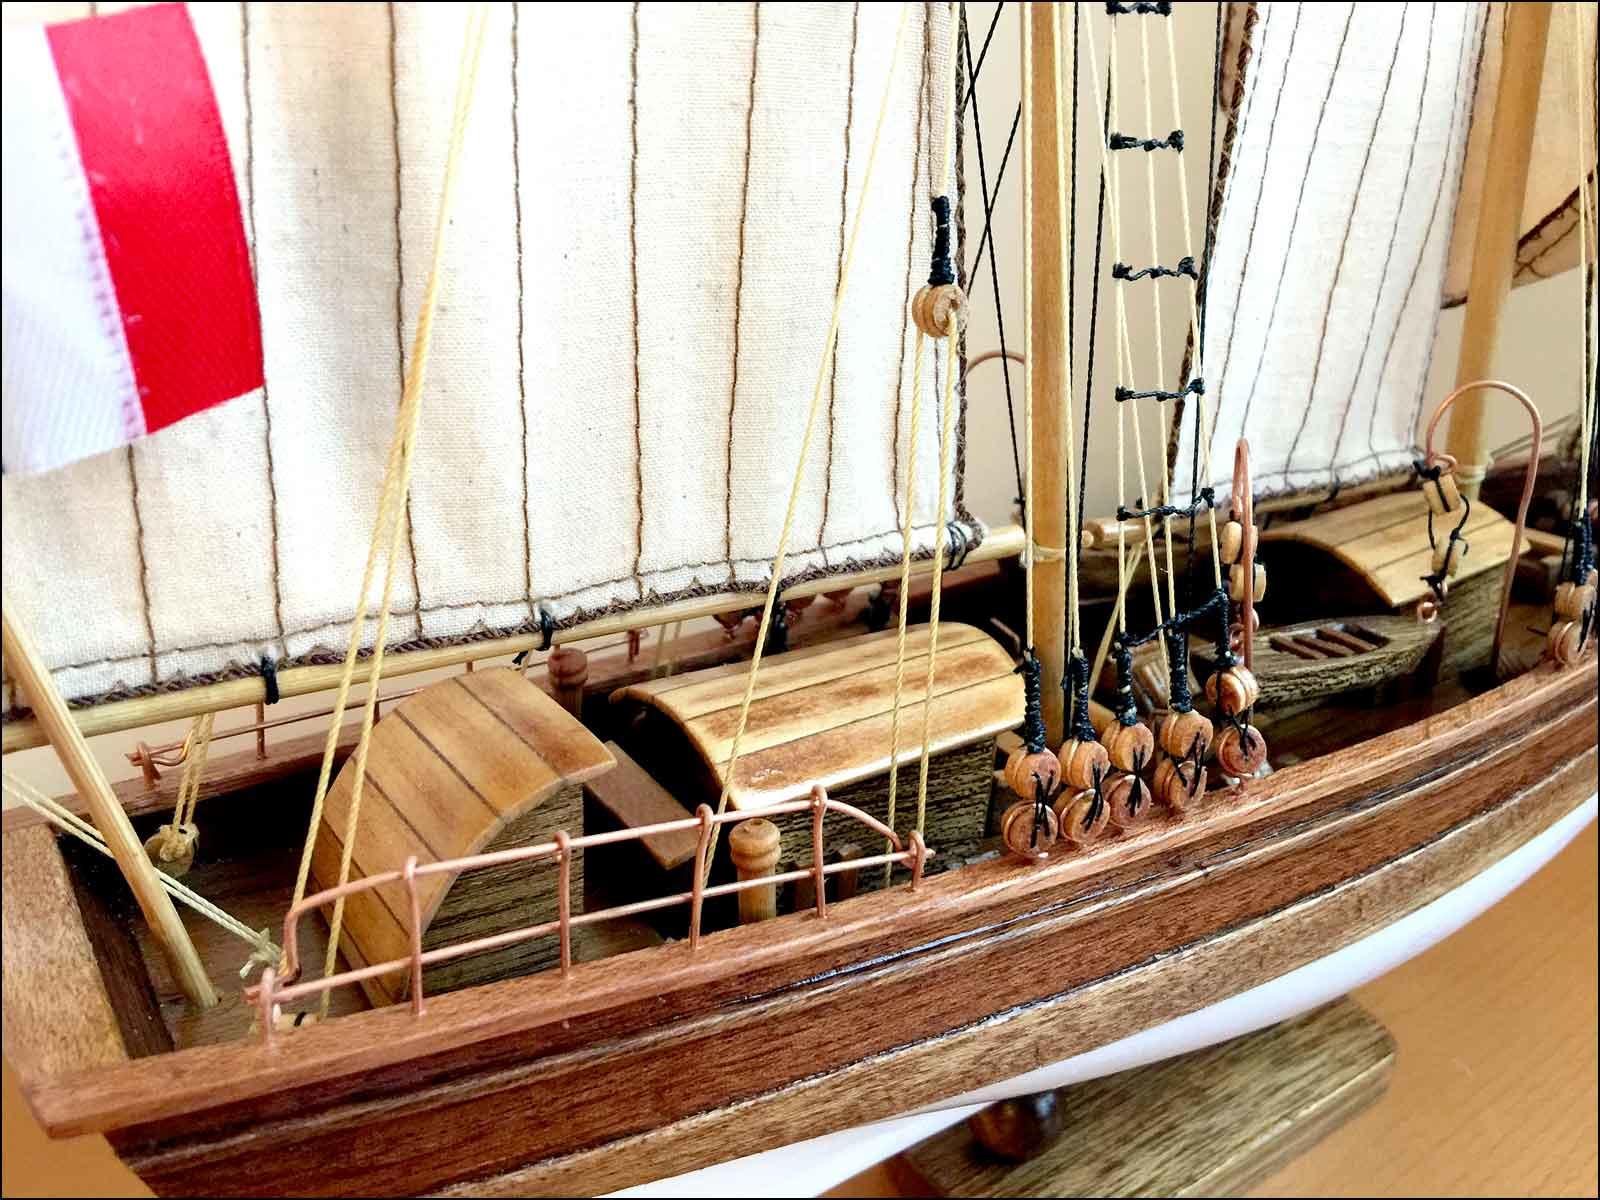 Etoile schooner model